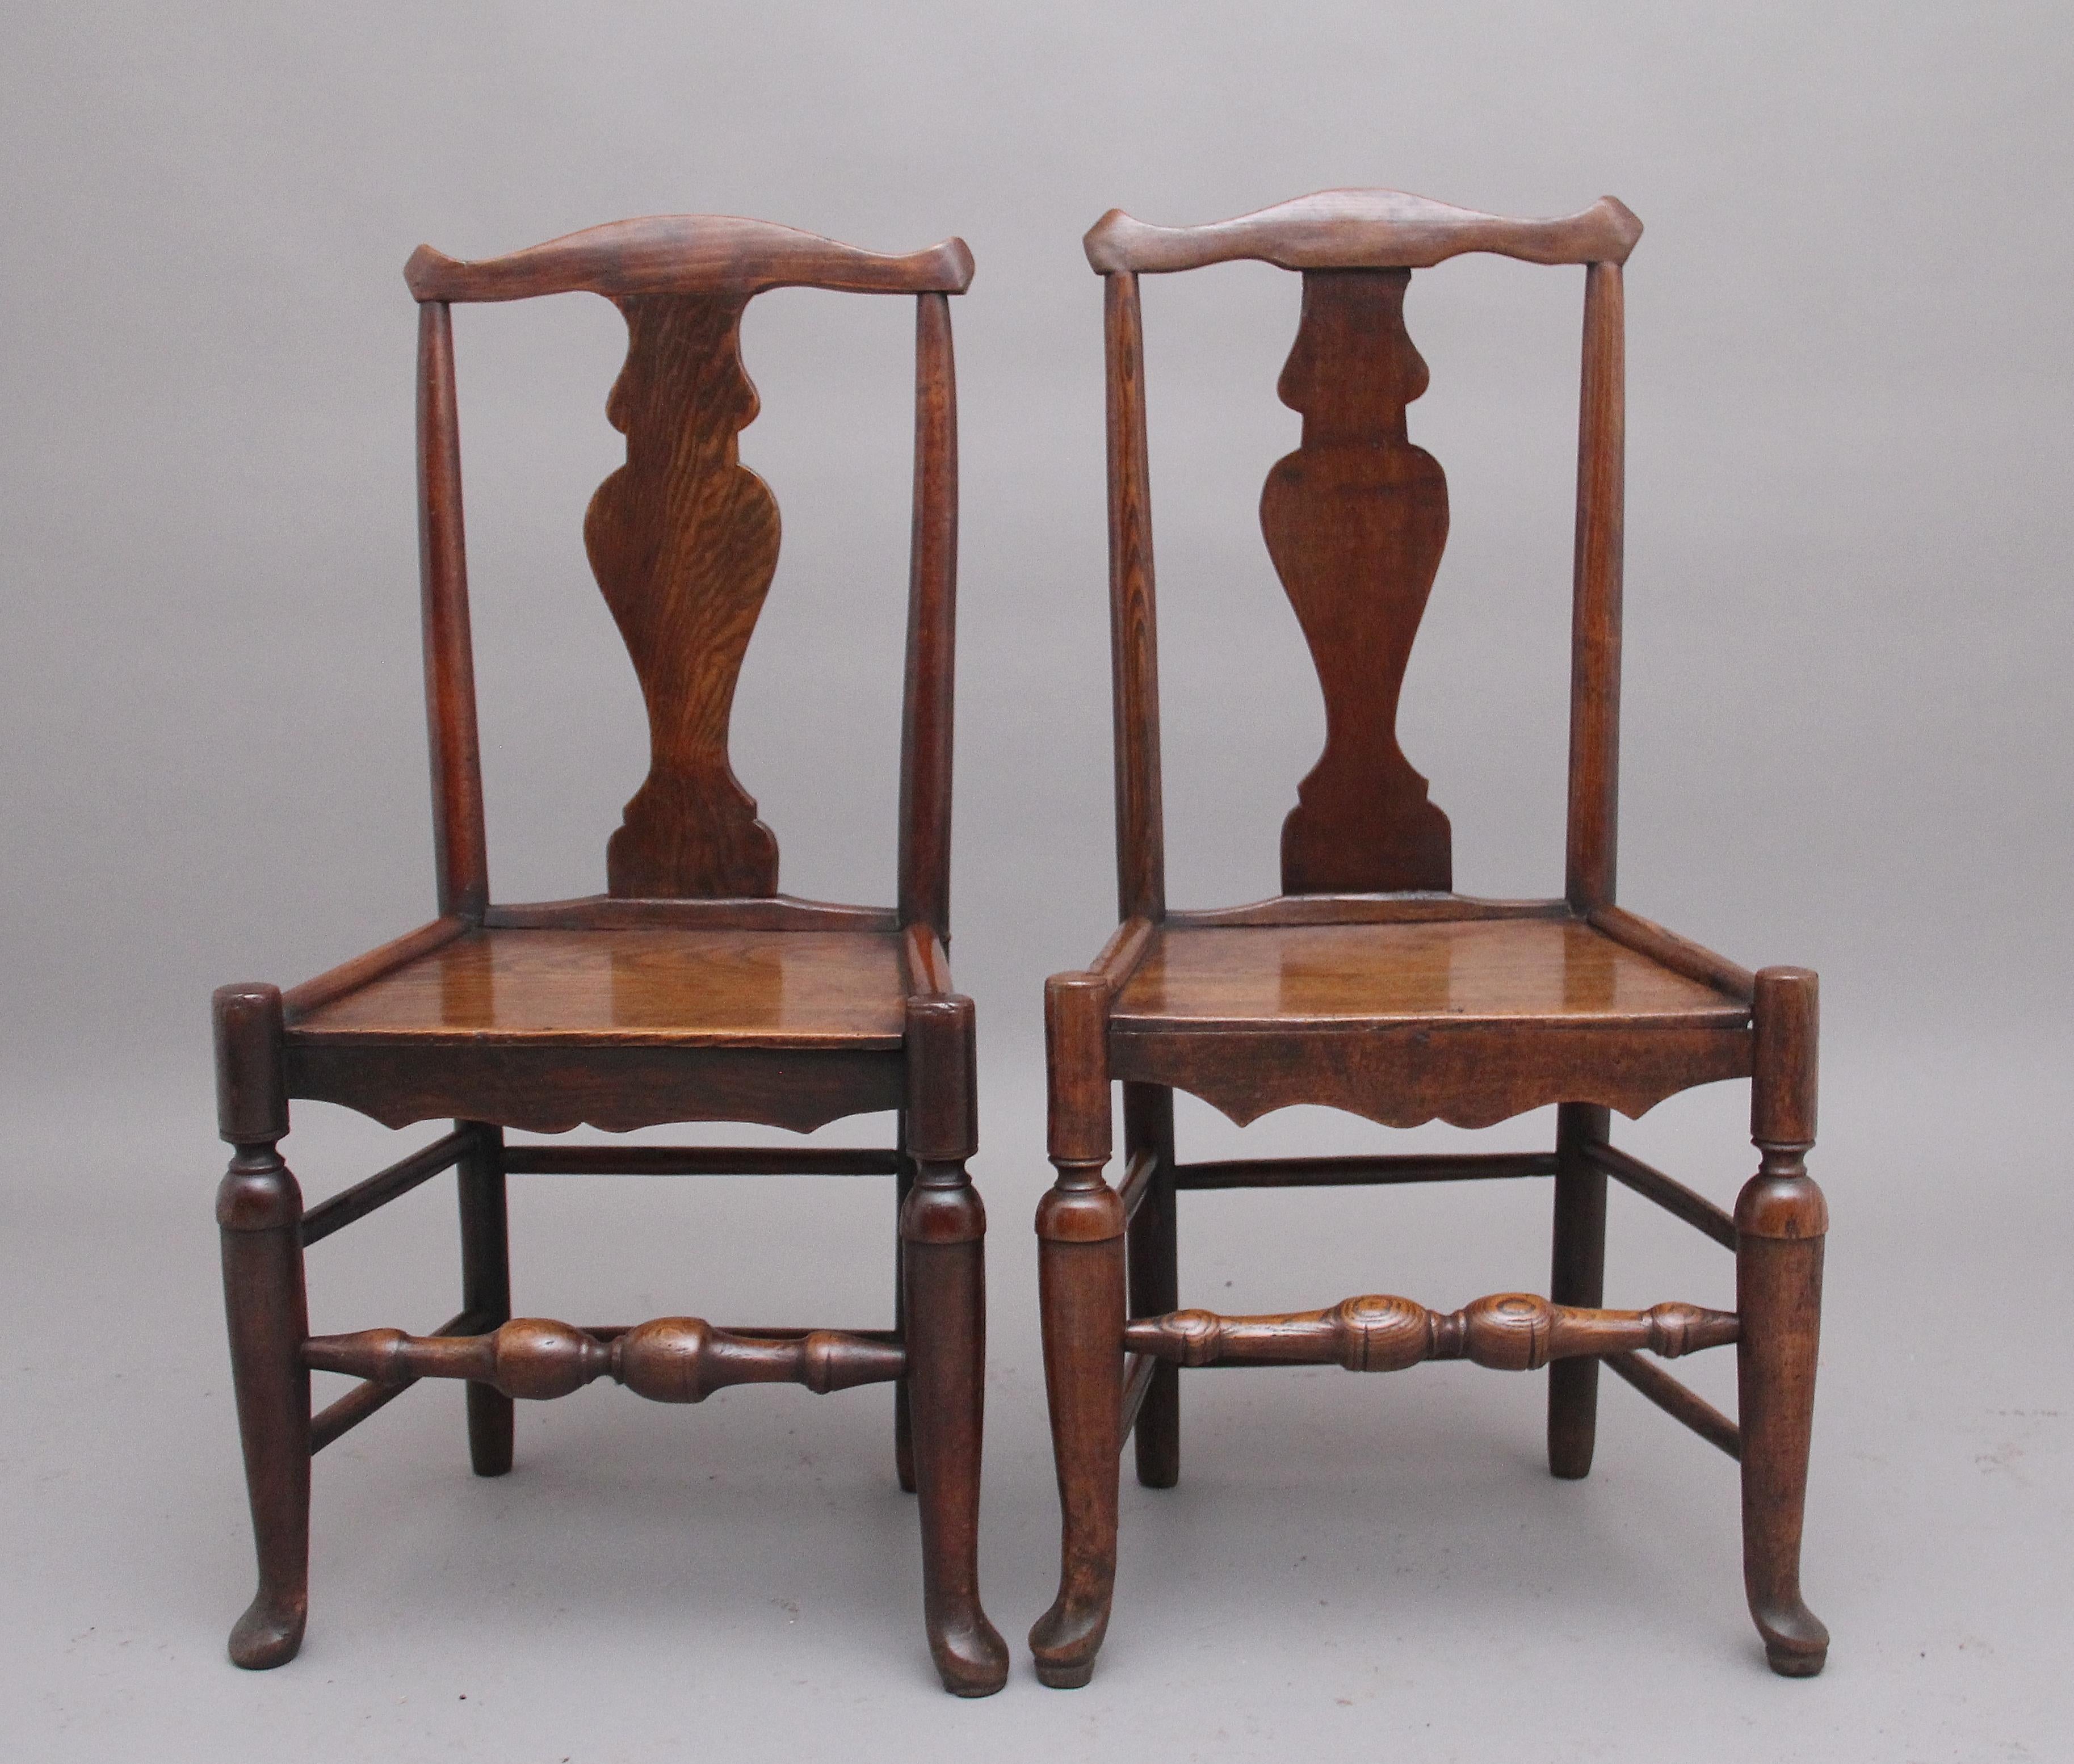 Ein Paar Ulmenbeistellstühle aus der Mitte des 18. Jahrhunderts aus der georgianischen Periode, mit einer geformten Schiene über einem dekorativen geformten Splat mit gedrehten Seitenstützen, einem wunderschön geformten Plankensitz mit einer